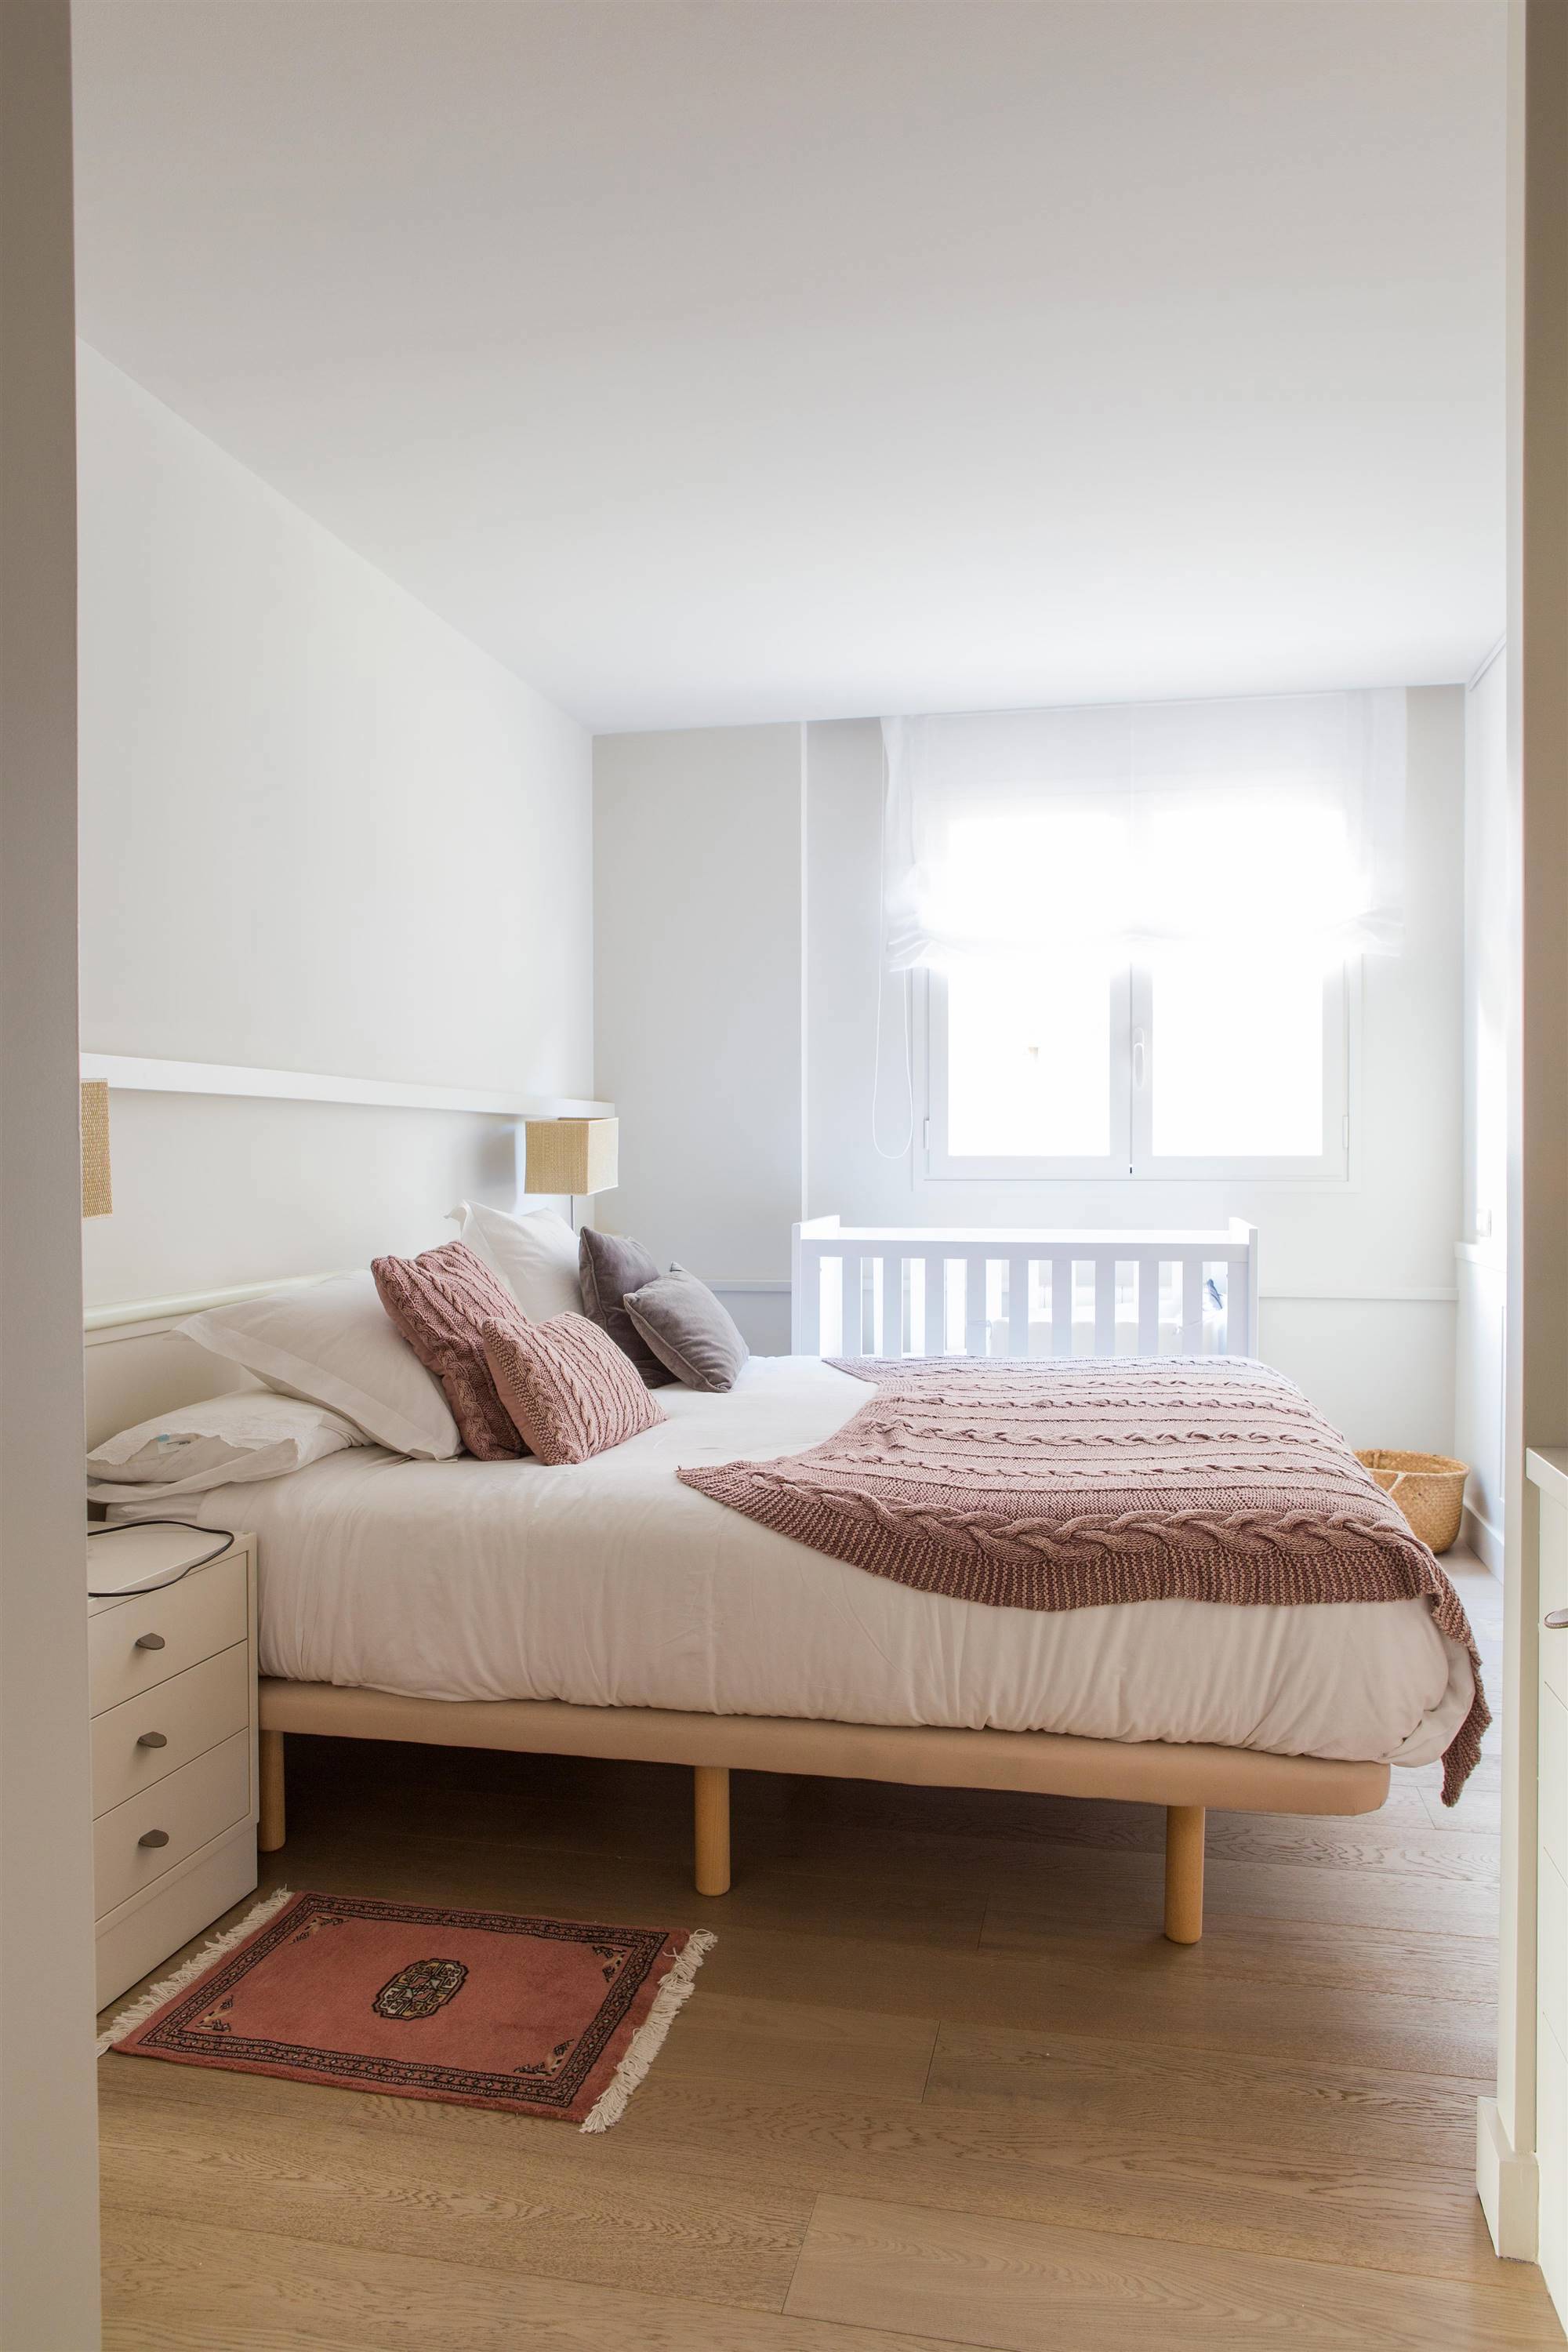 Dormitorio con cama alta y colcha en color rosa empolvado